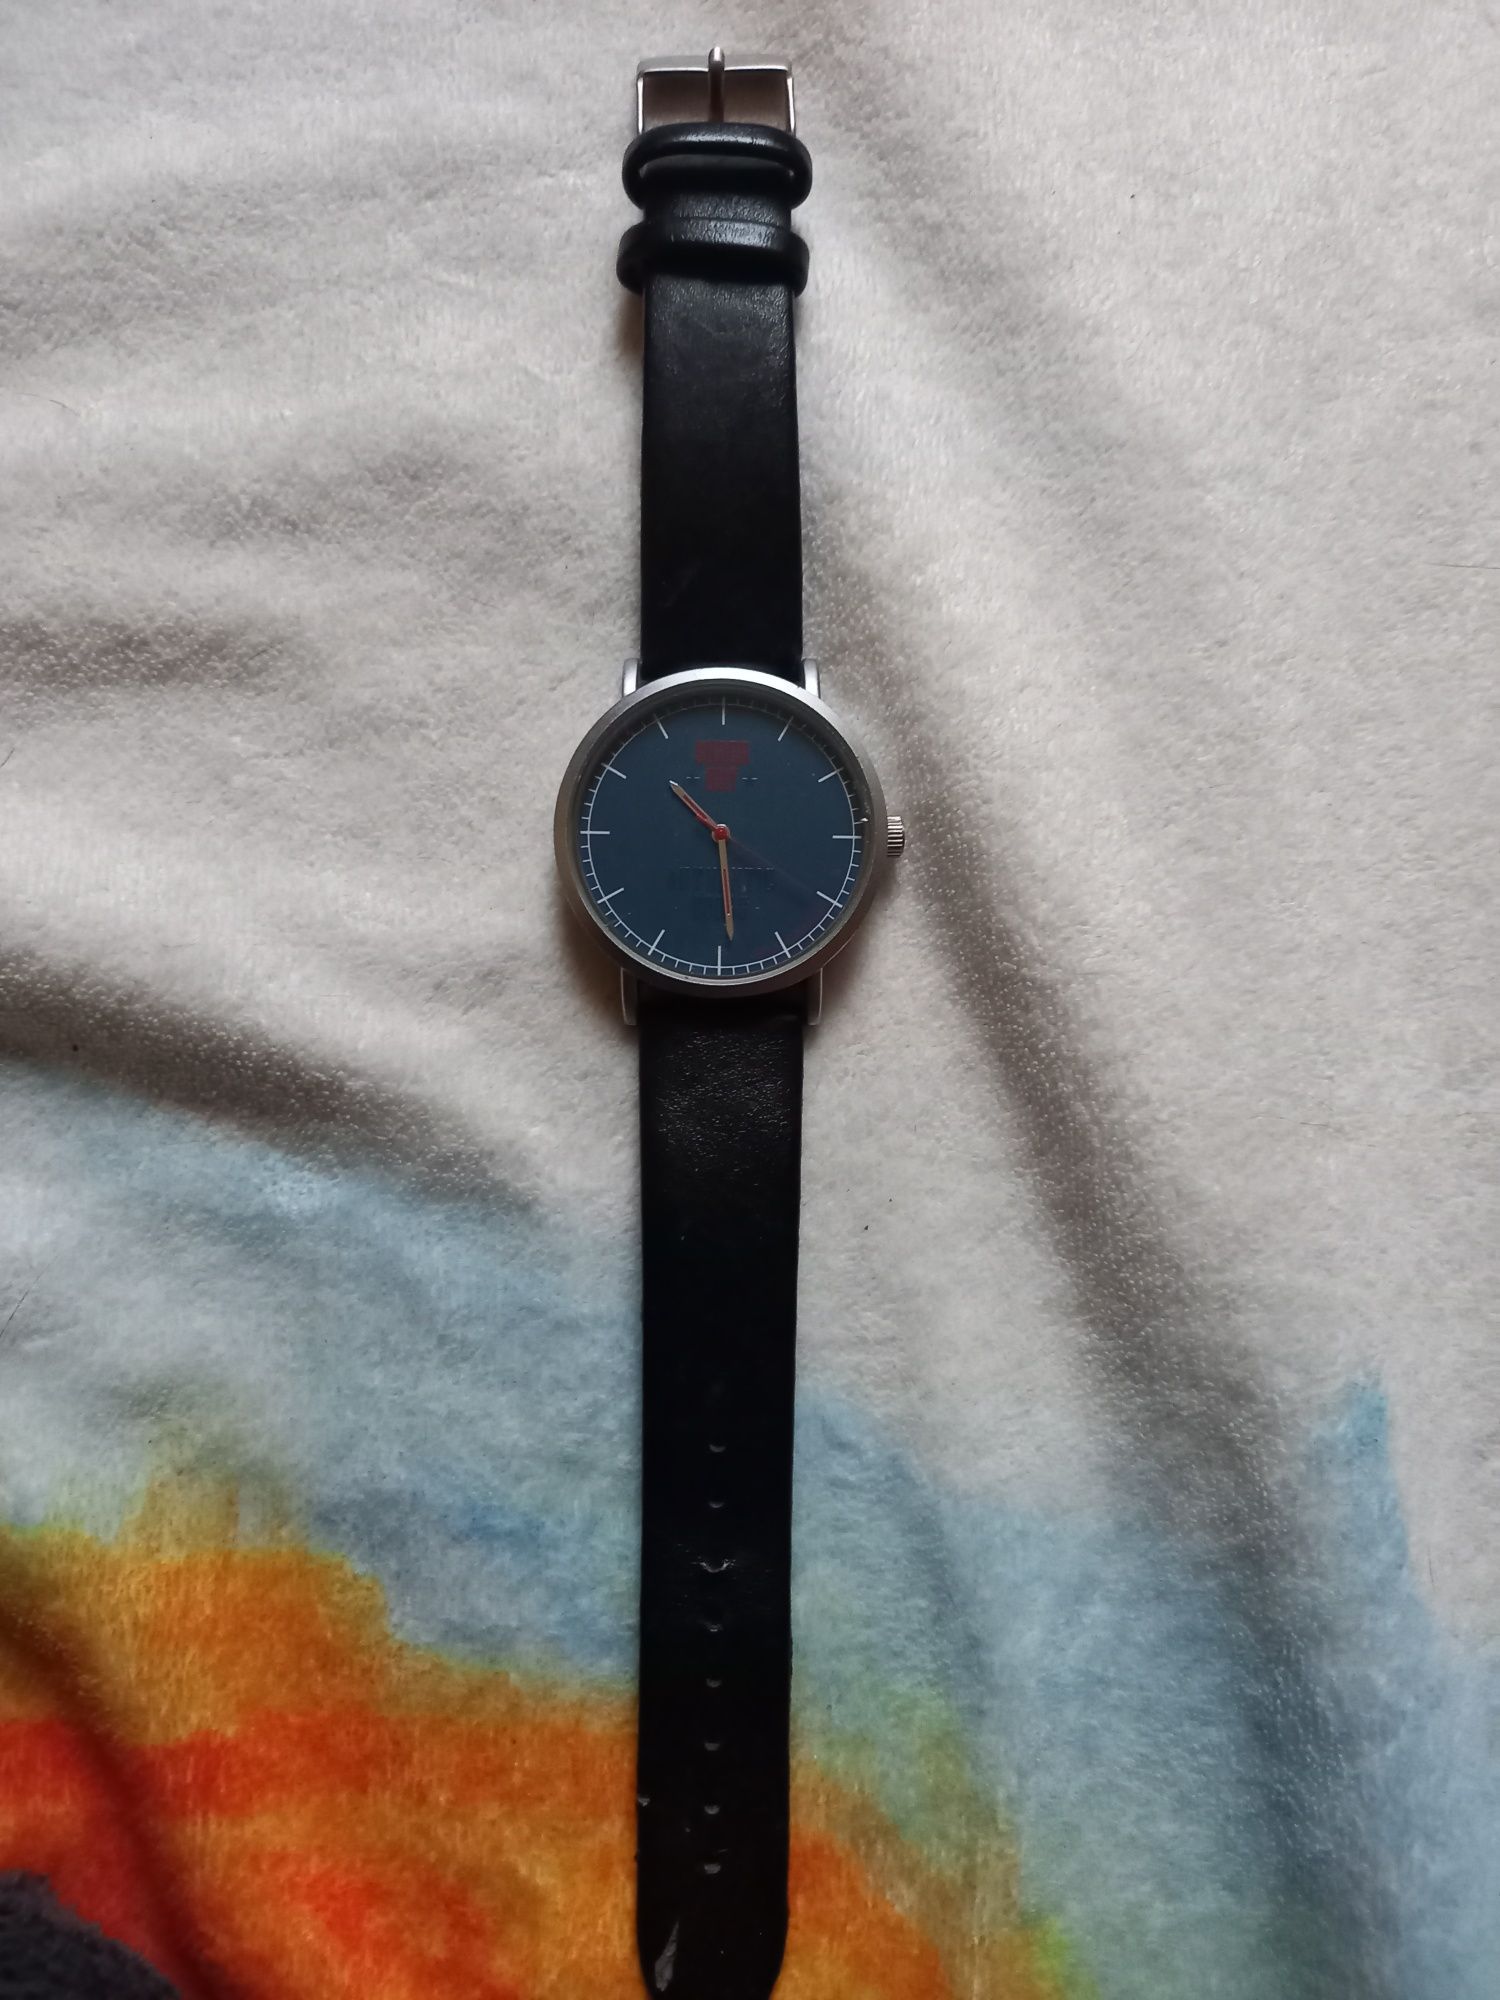 Zegarek Superdry niebieski, skórzany pasek